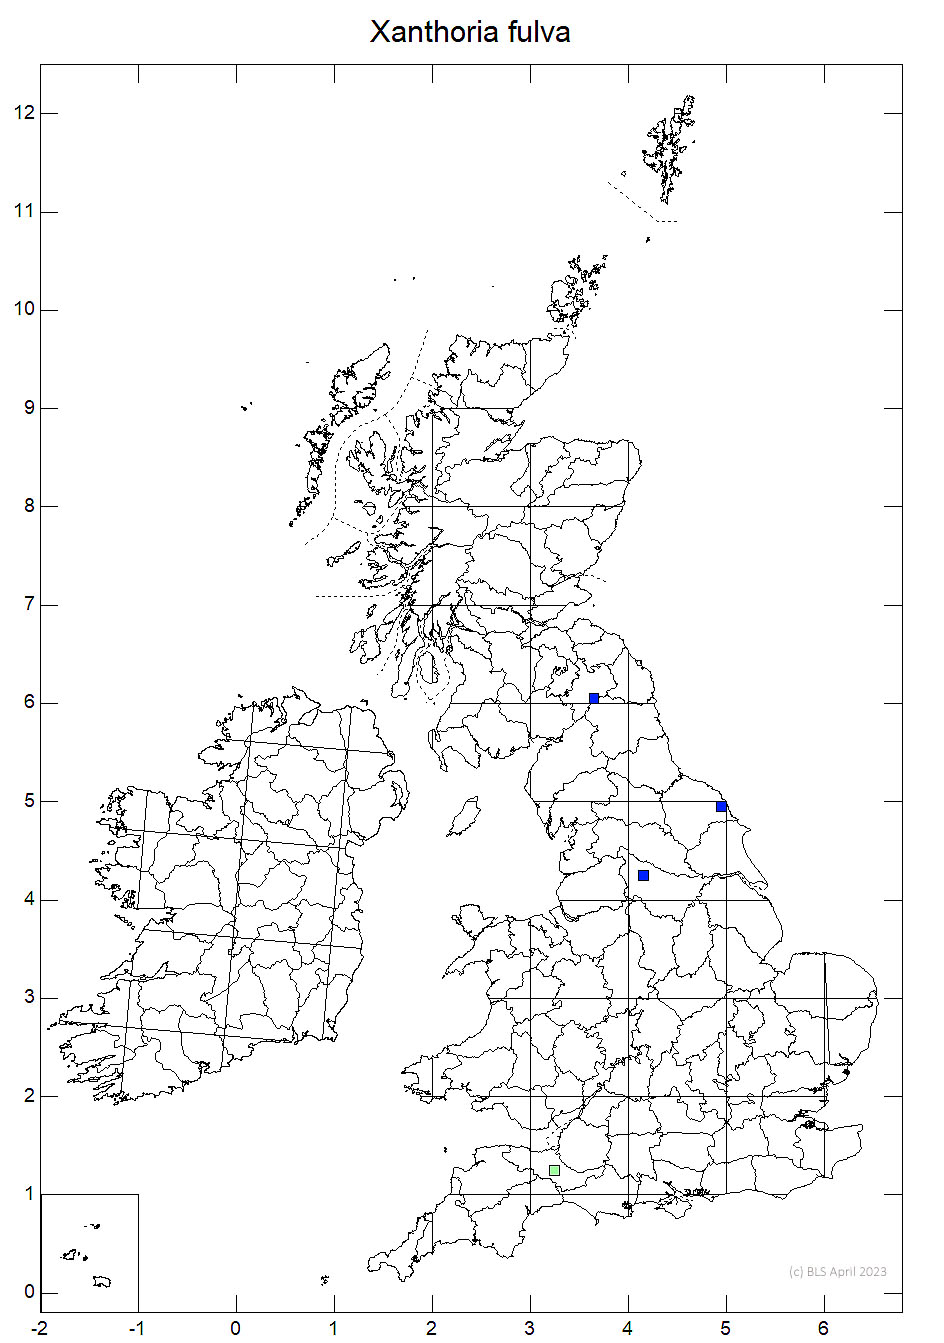 Xanthoria fulva 10km sq distribution map